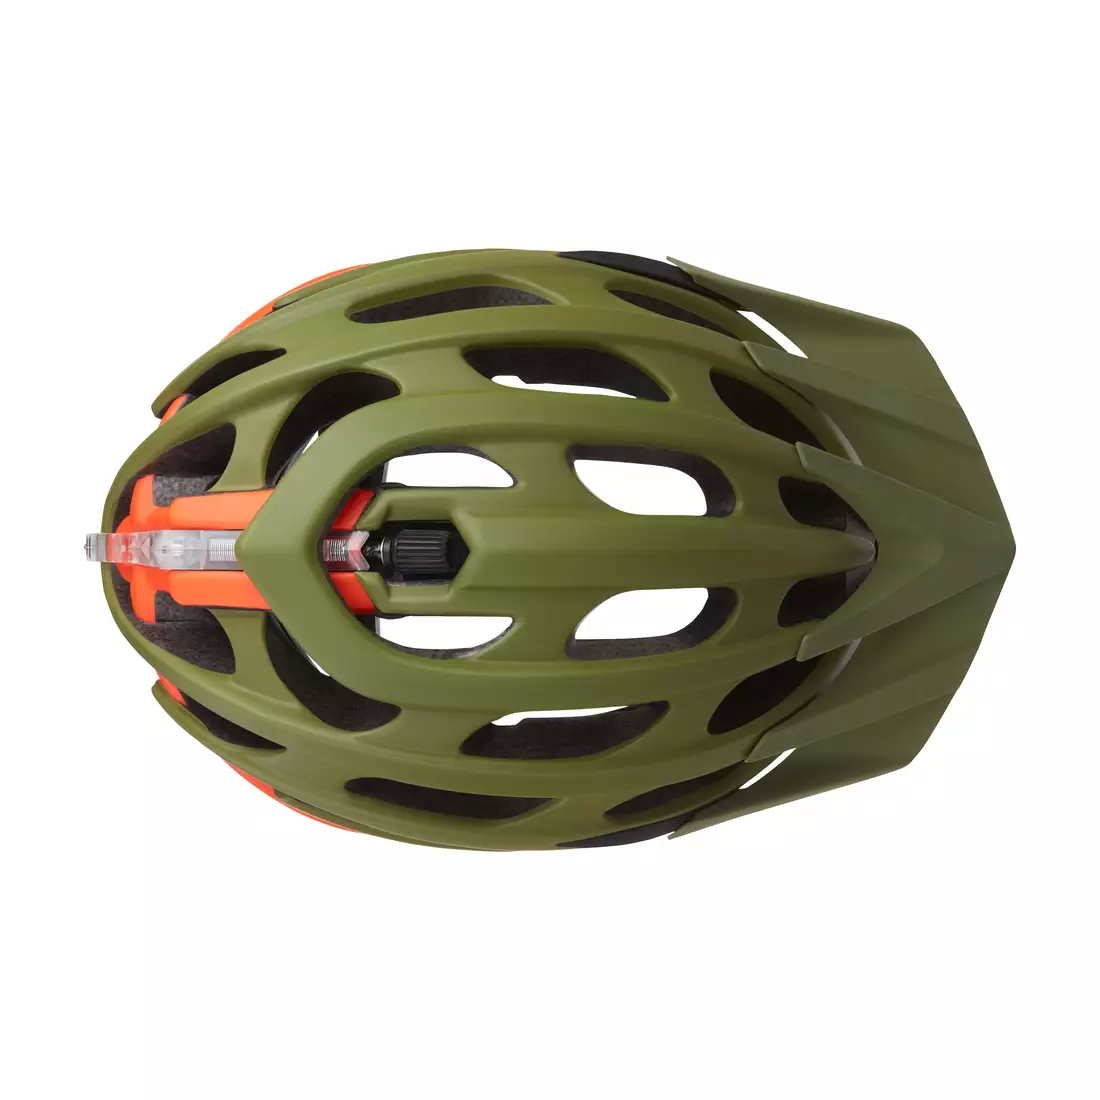 LAZER MAGMA+ MTB kerékpáros sisak, matt zöld